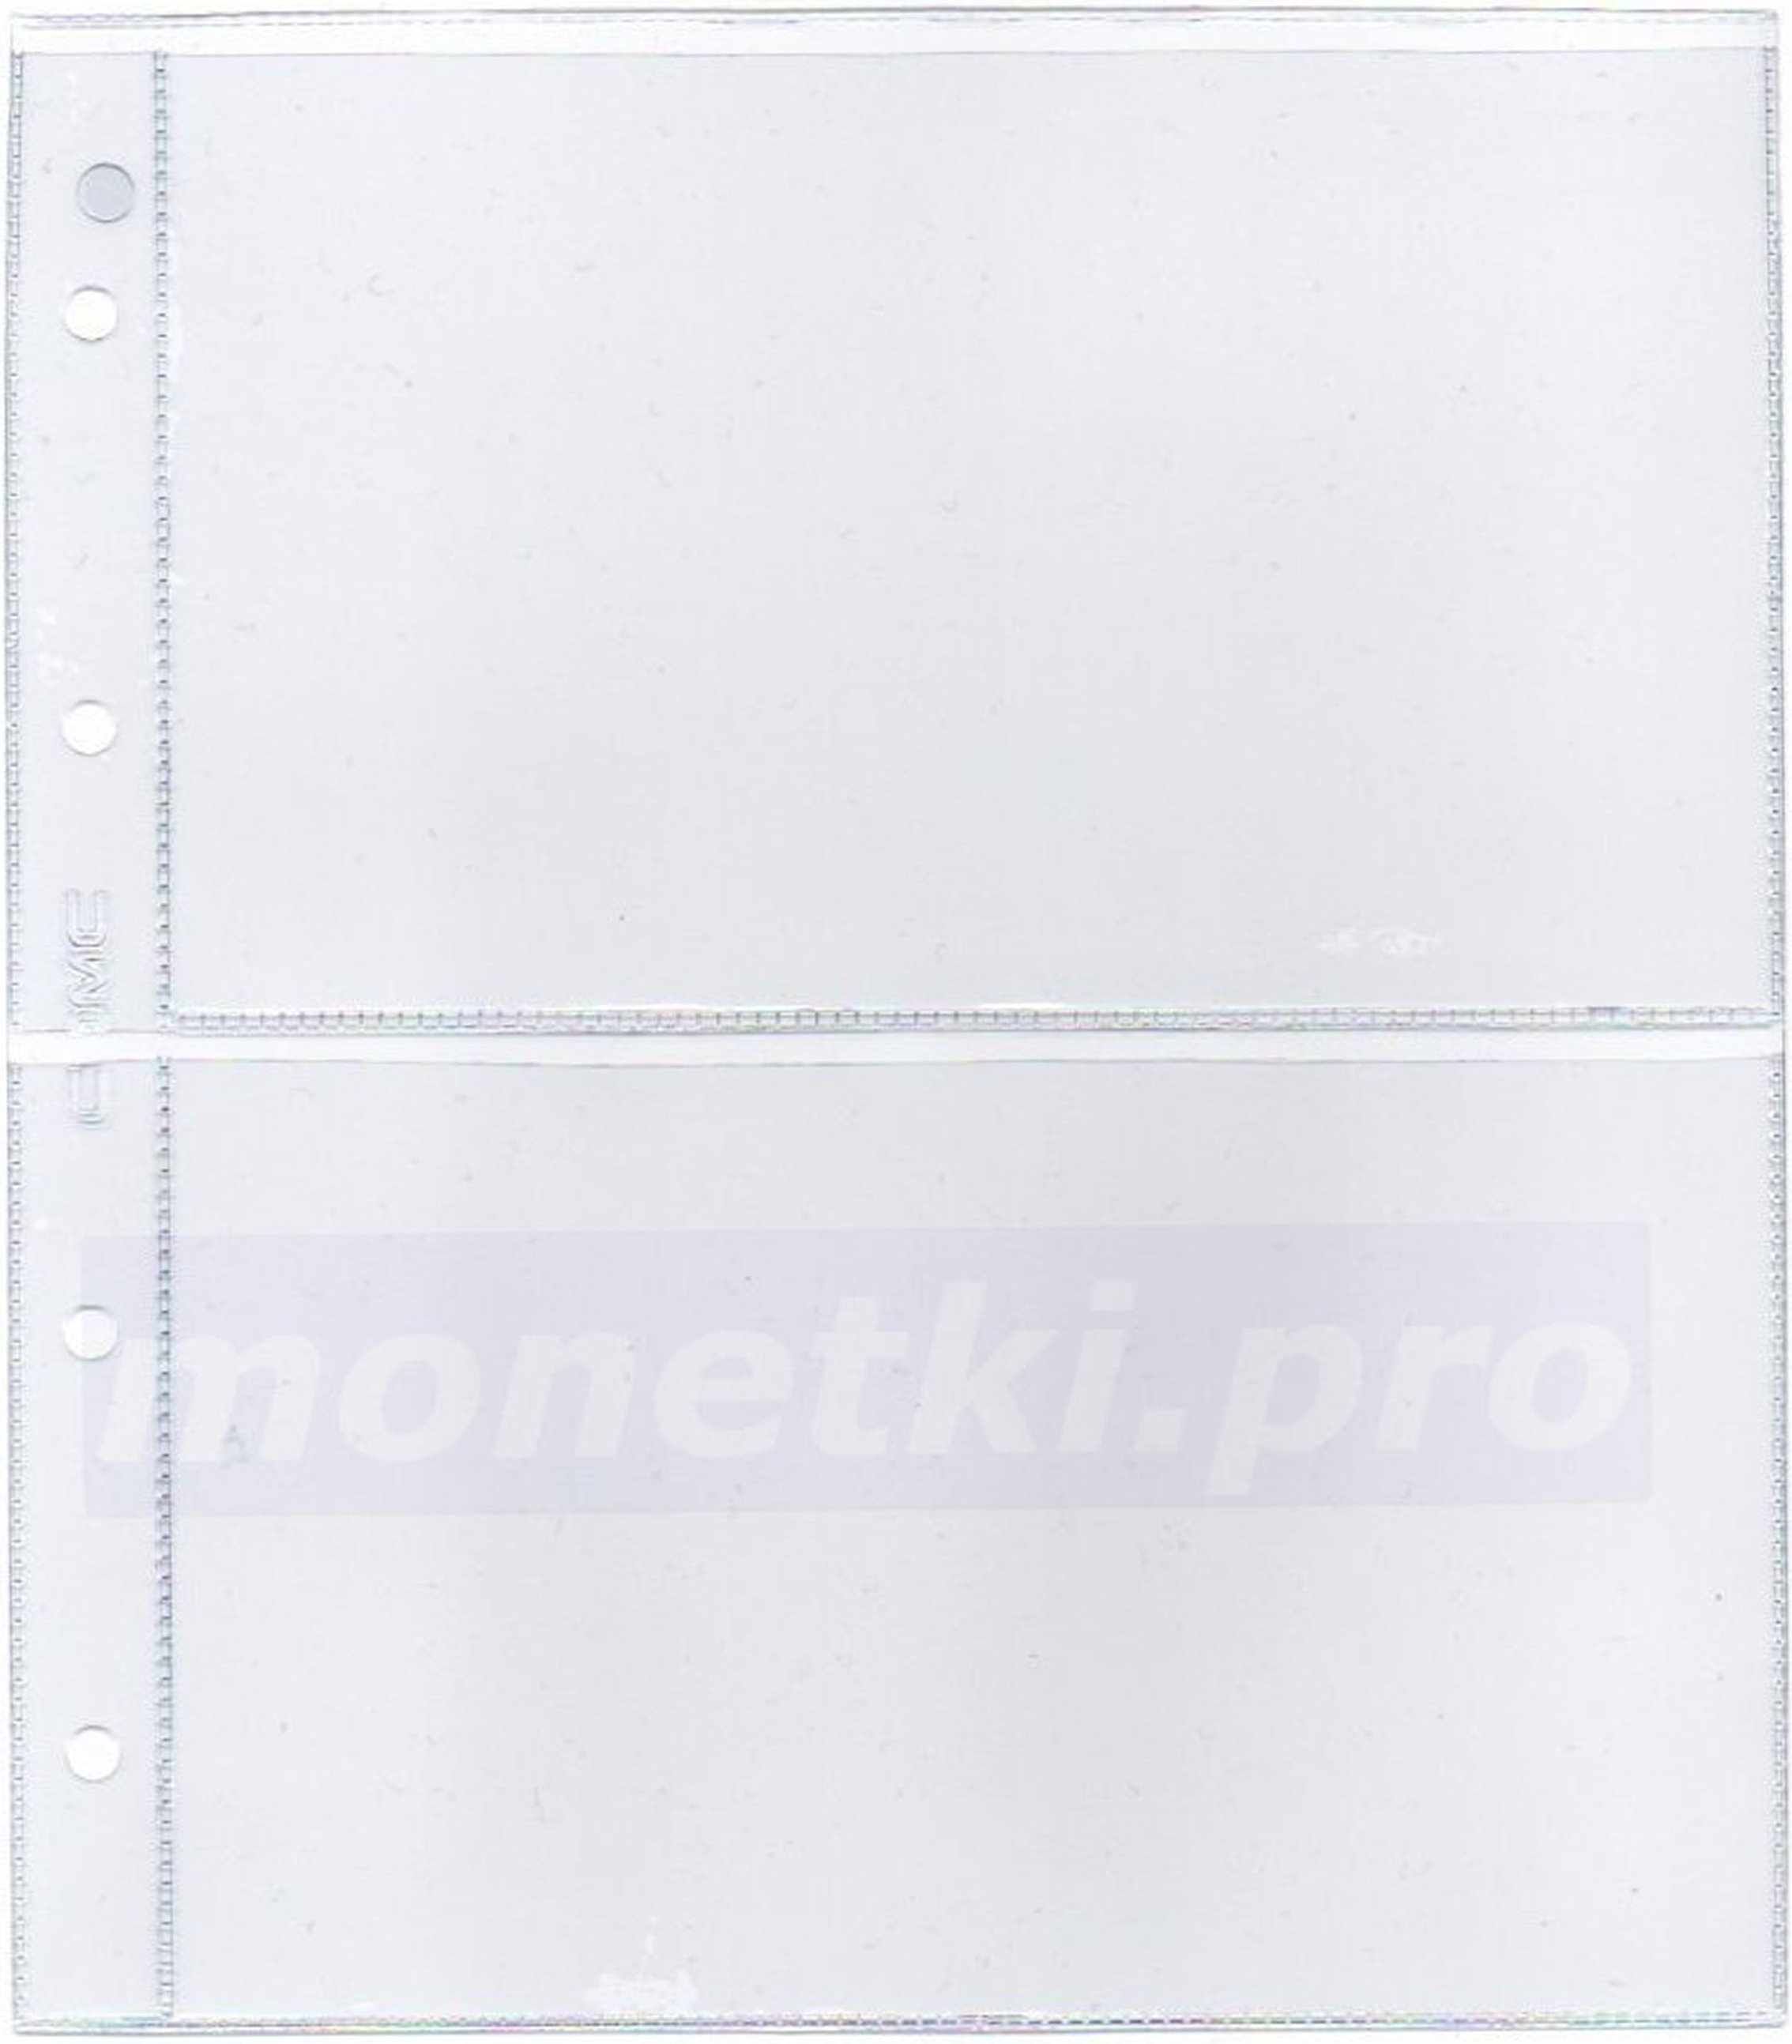 Купить листы для бон на 2 ячейки размер кармана 175 х 105 мм формат Нумис (Numis), фото 